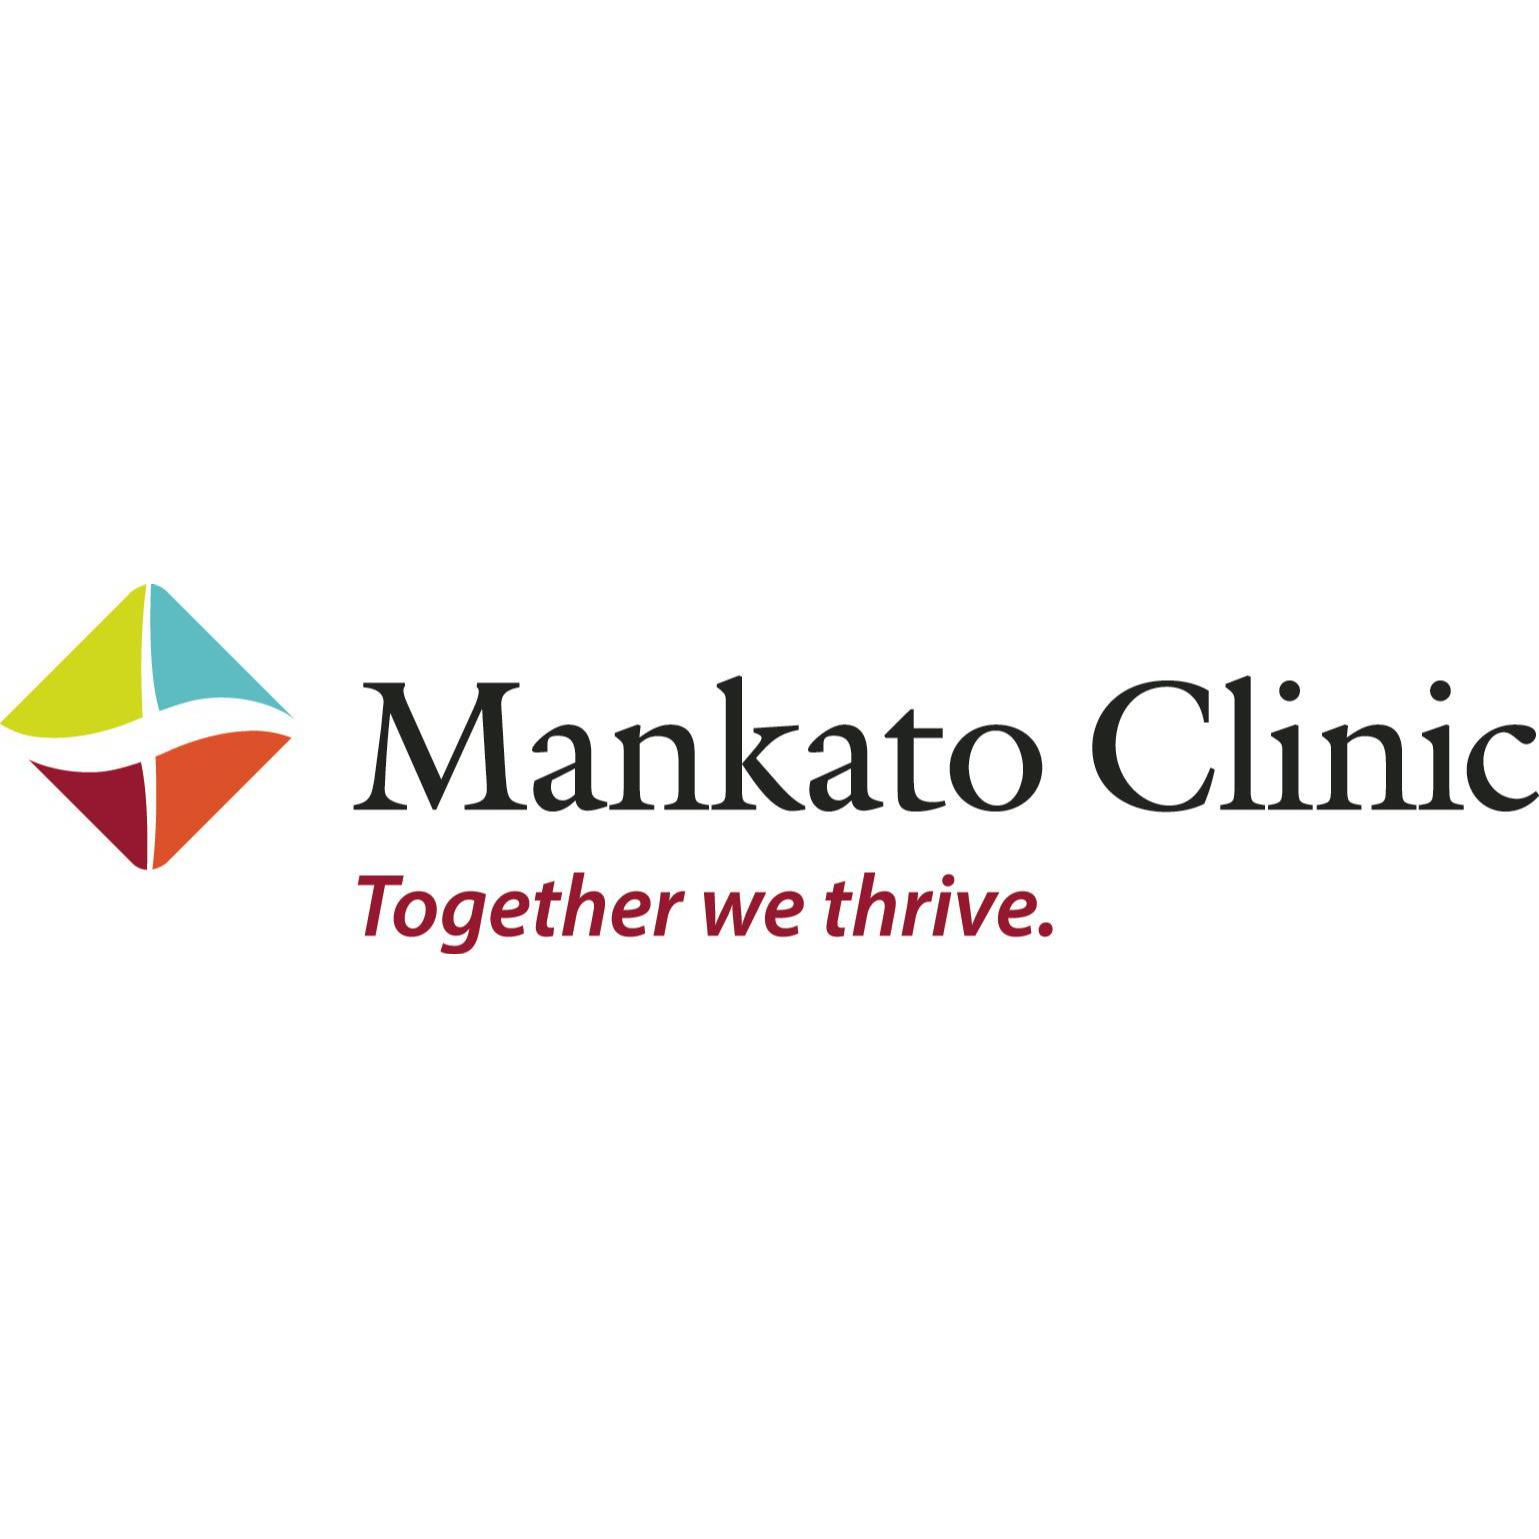 Mankato Clinic Sports Medicine Department - Mankato, MN 56001 - (507)389-8587 | ShowMeLocal.com